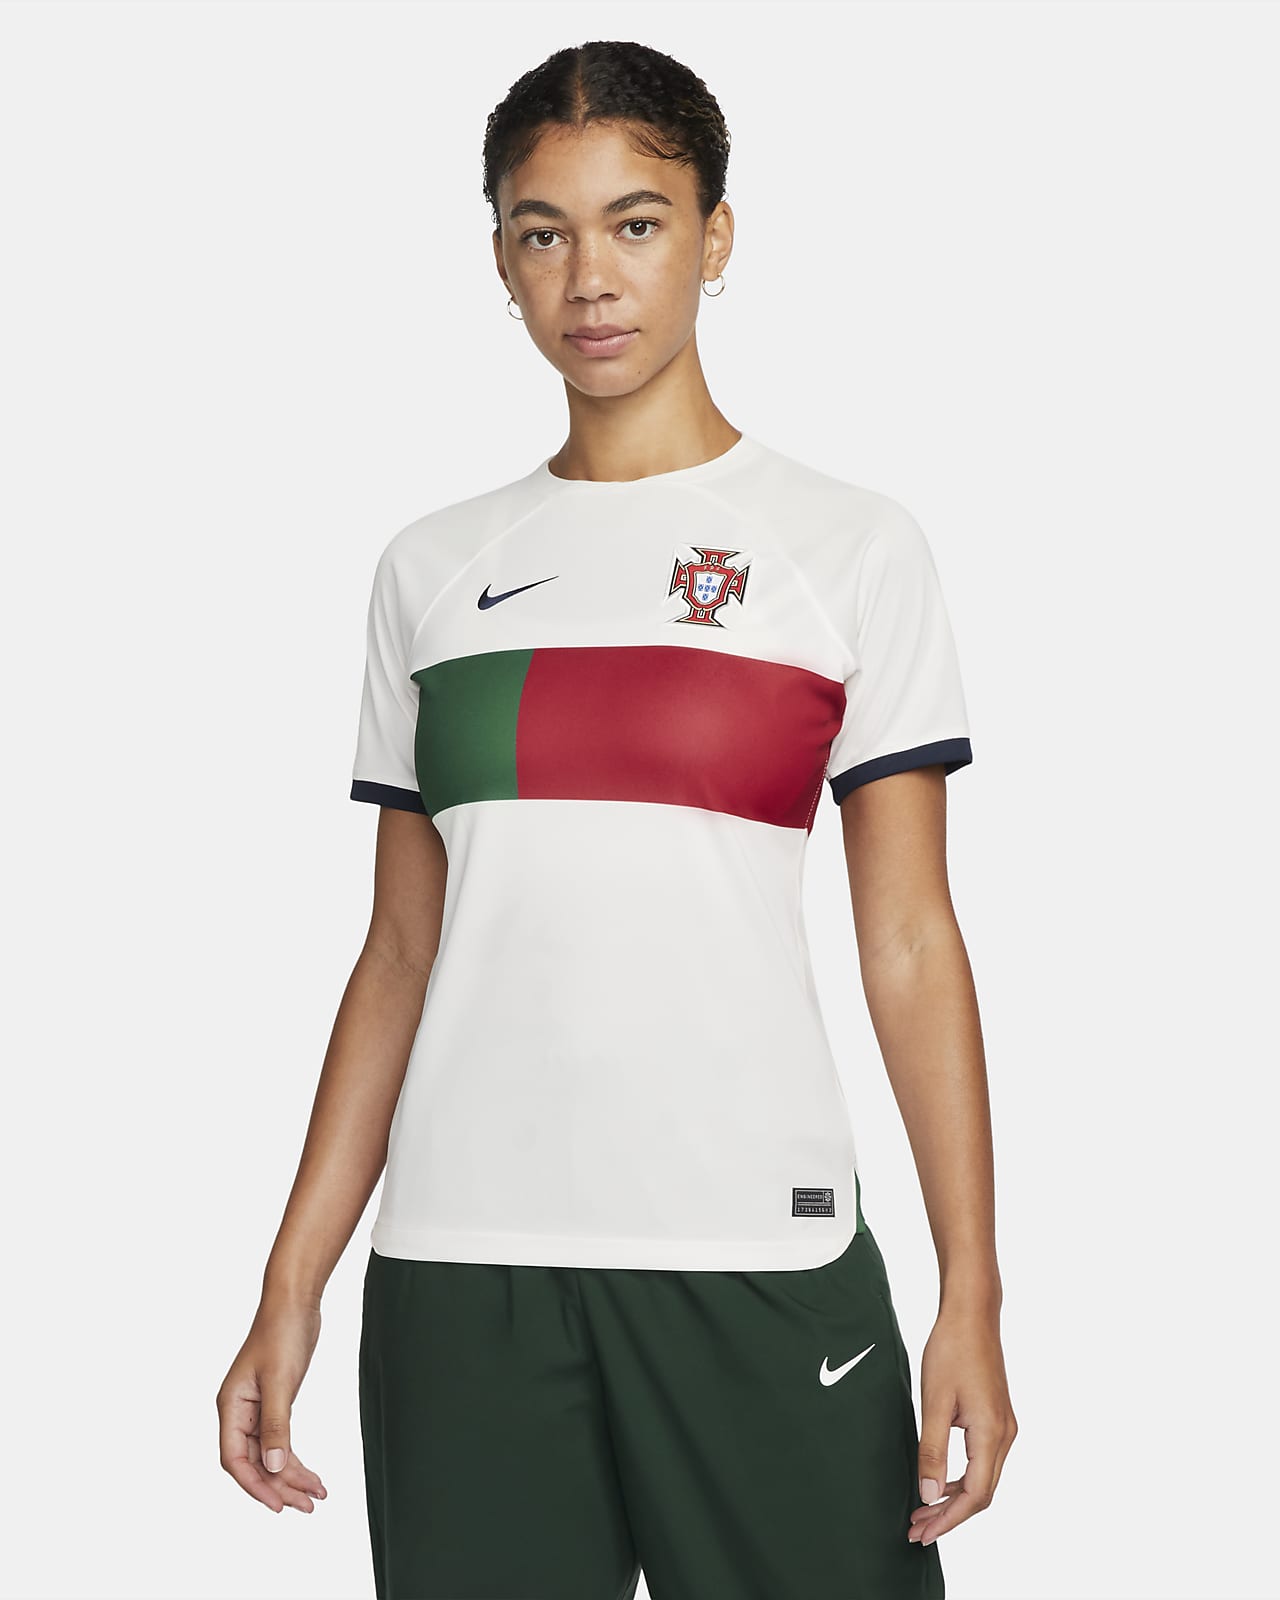 Willen Regeneratie Serena Portugal 2022/23 Stadium Uit Nike Dri-FIT voetbalshirt voor dames. Nike BE